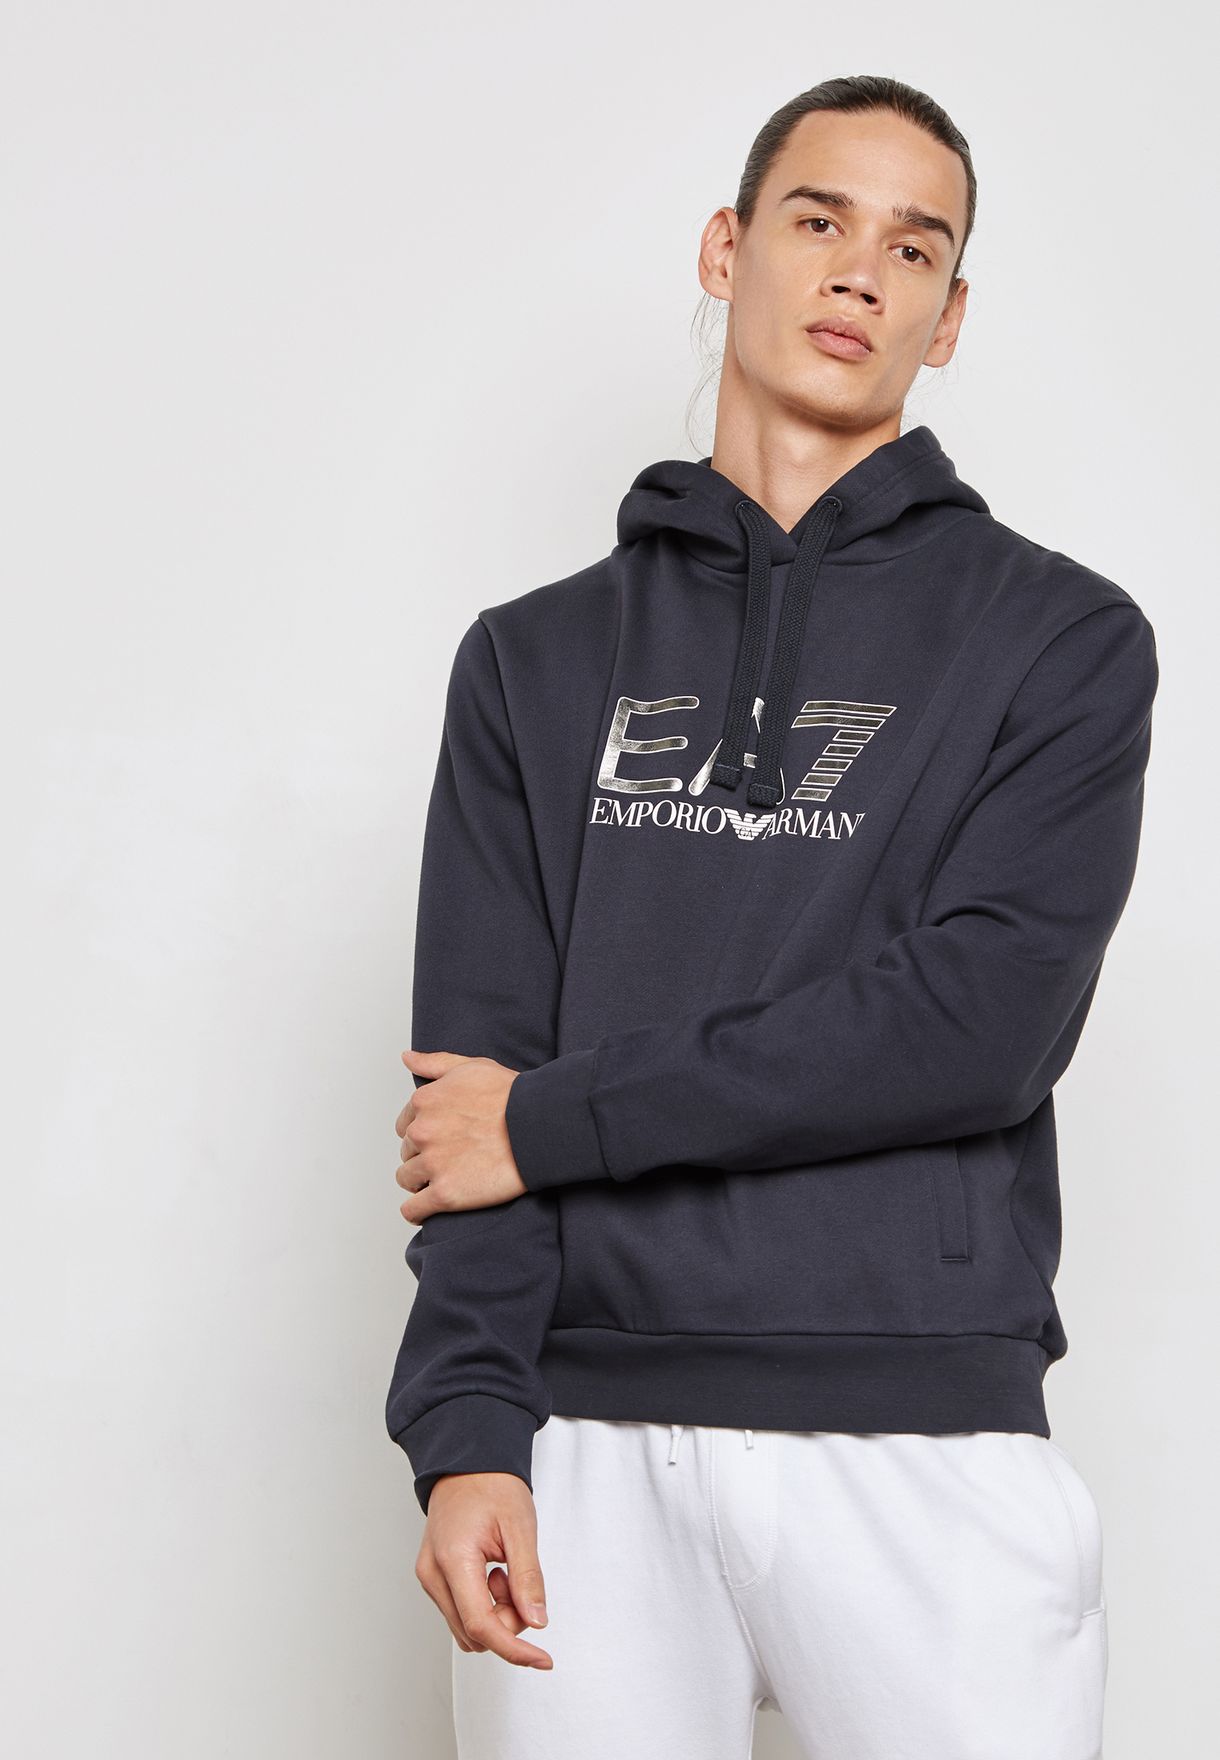 ea7 visibility sweatshirt